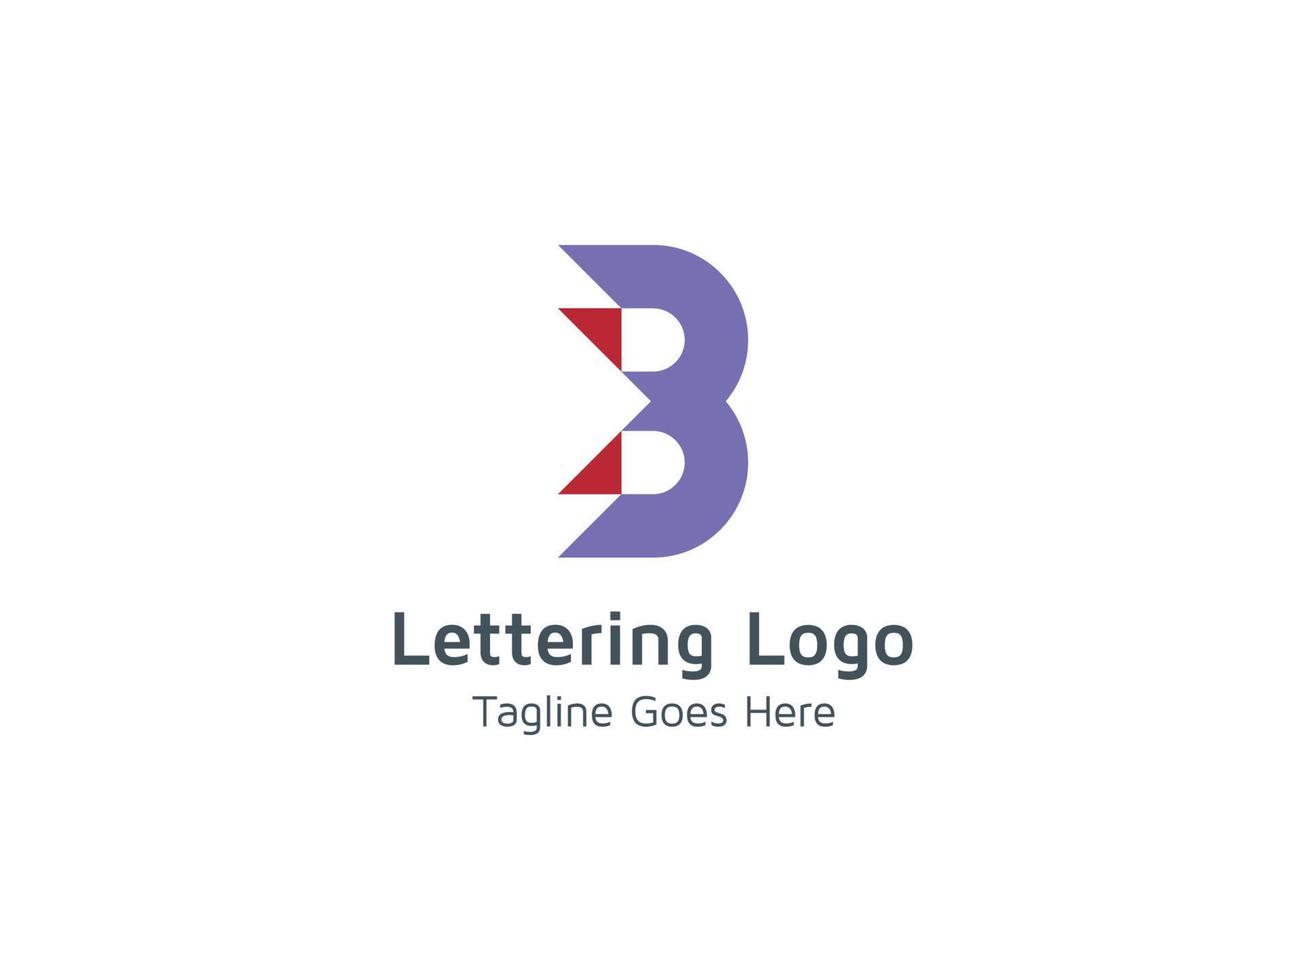 criativo de modelo de design de logotipo b pro vetor grátis